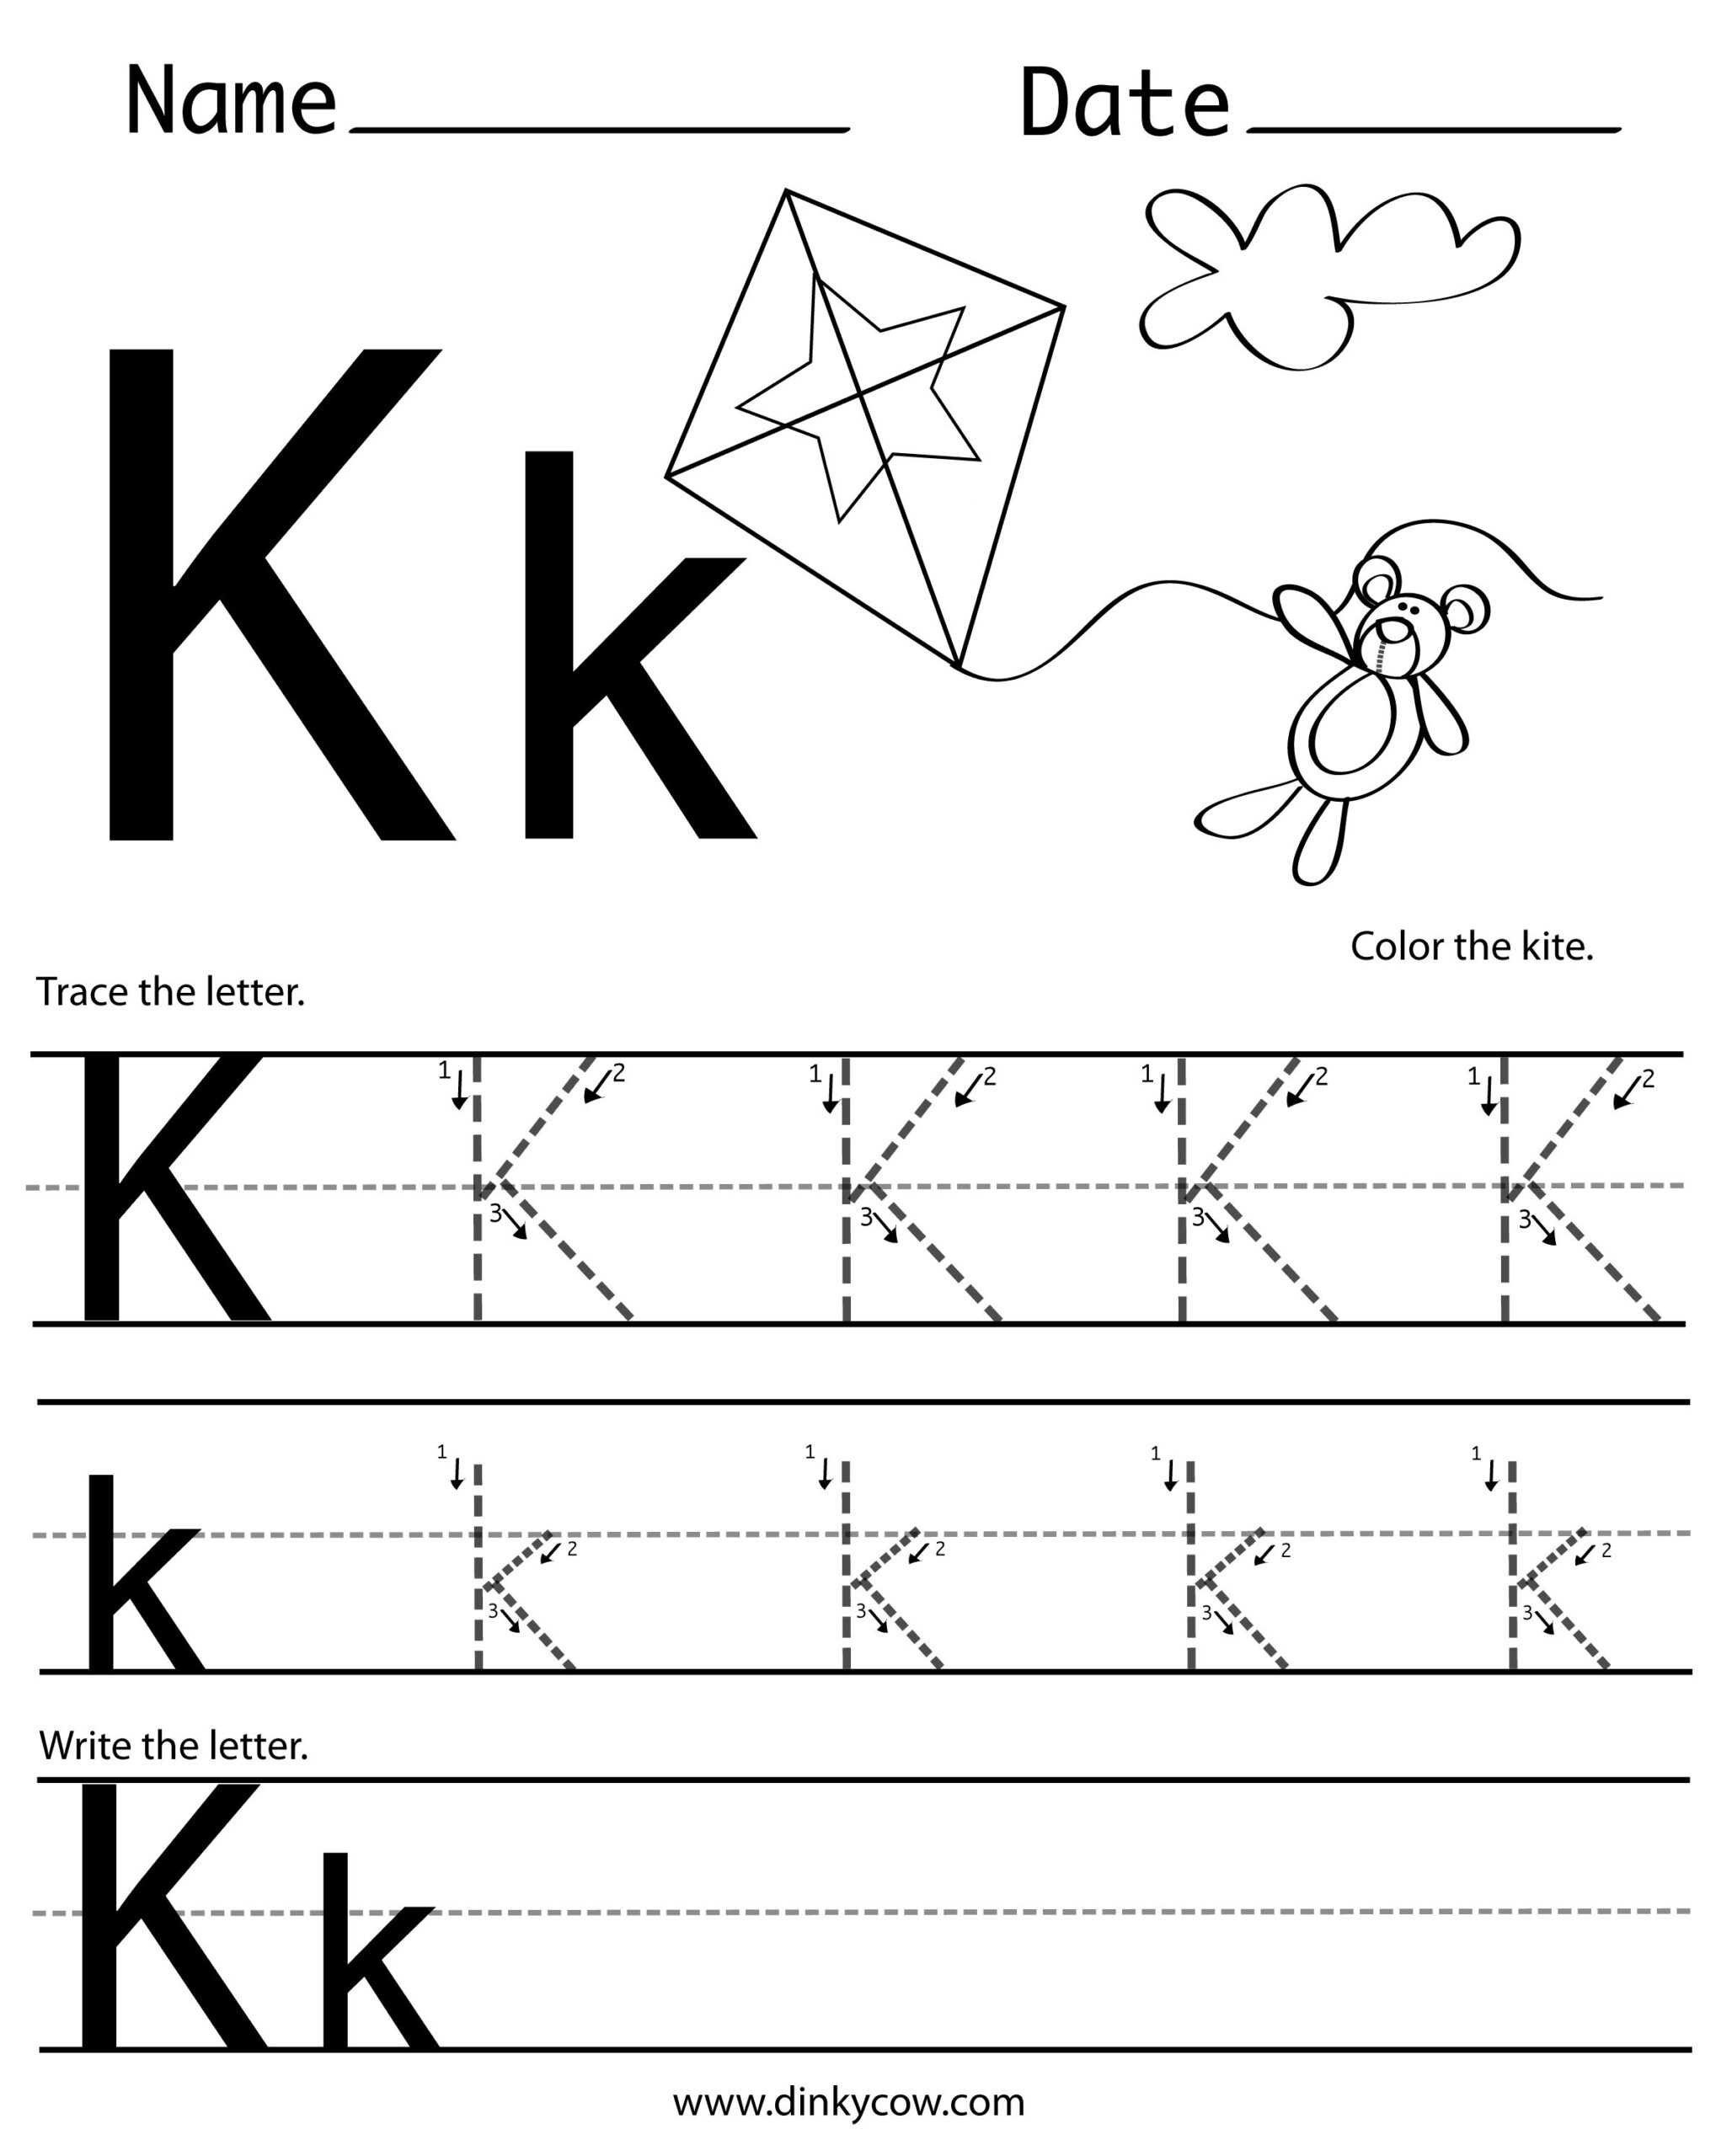 printable-letter-k-tracing-worksheets-for-kindergarten-preschool-crafts